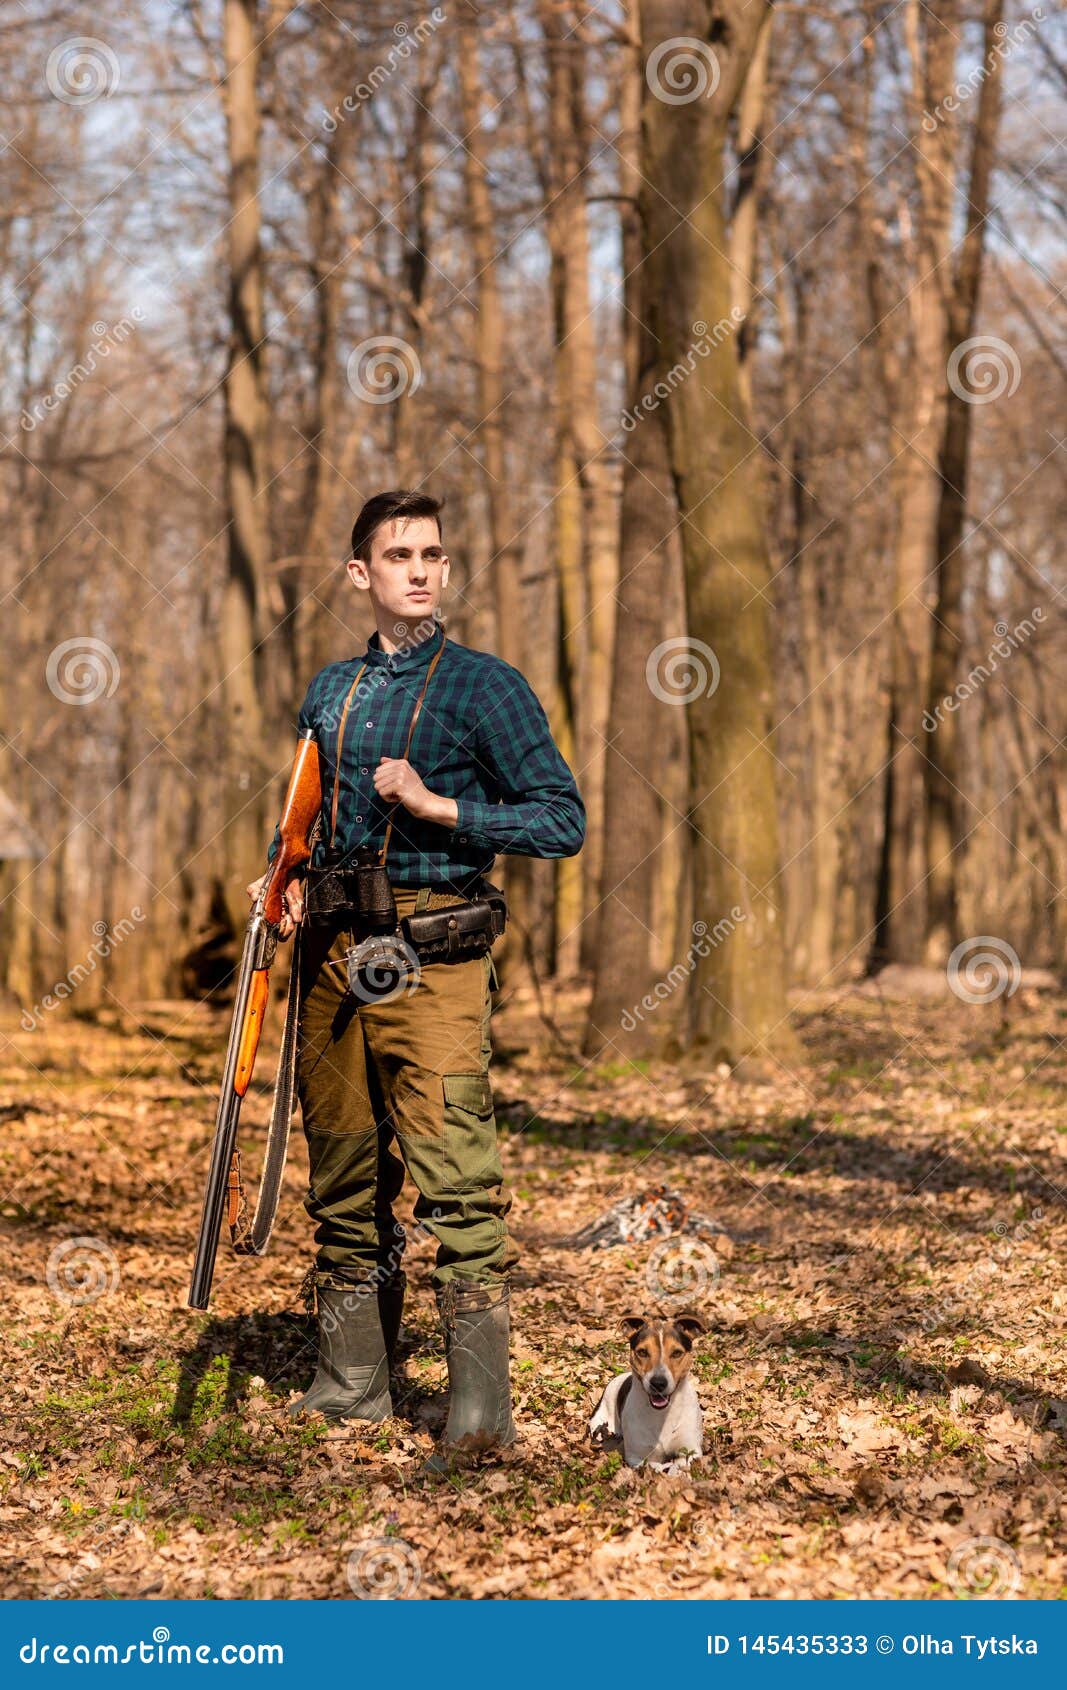 与猎枪的猎人在森林里 库存图片. 图片 包括有 猎枪, 射击, 专业人员, 人员, 纬向条花, 森林, 结构树 - 73035659